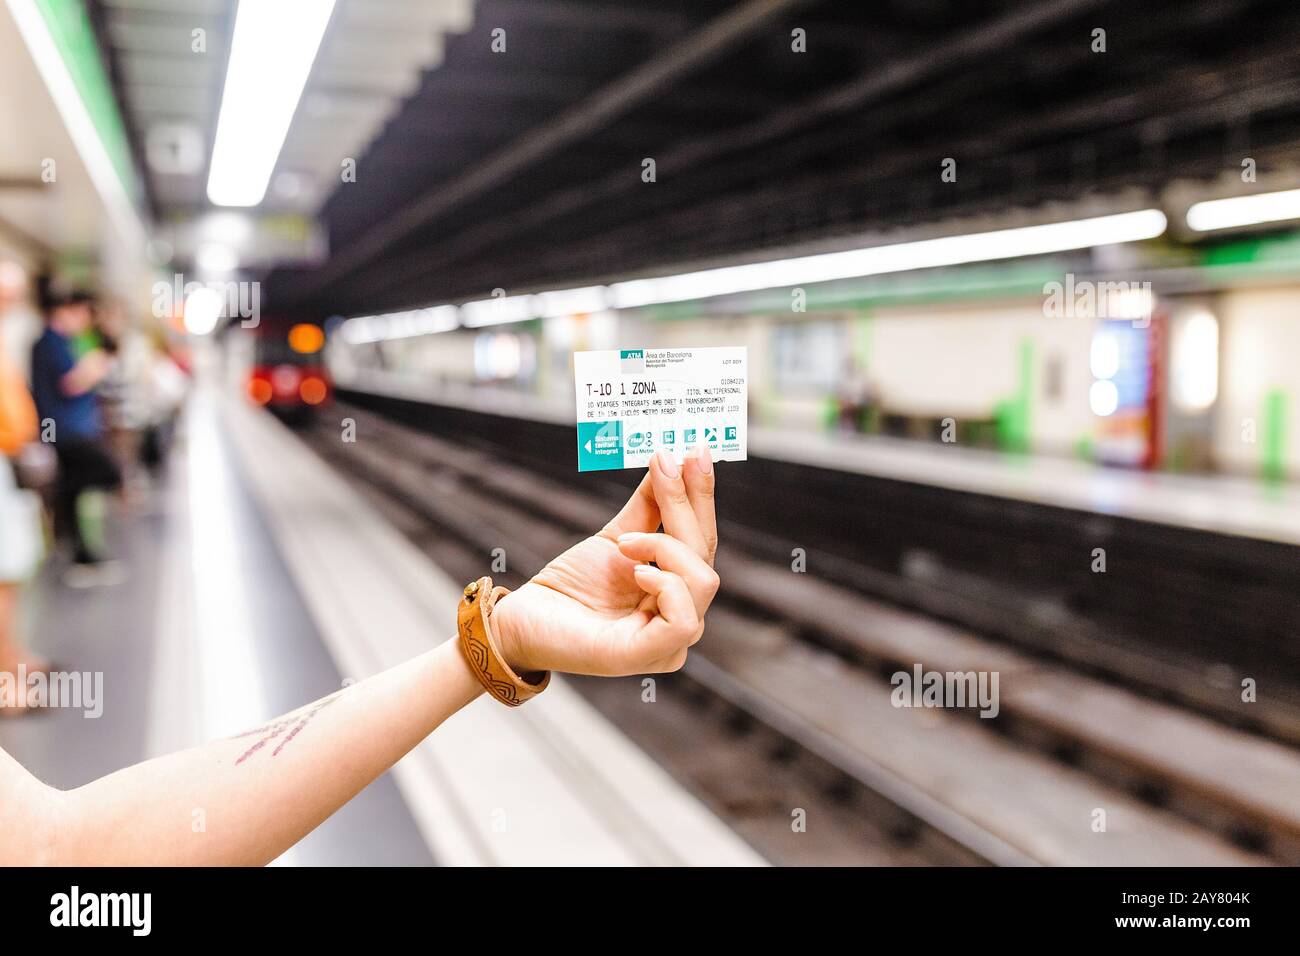 10 JUILLET 2018, BARCELONE, ESPAGNE: Femme voyageur détient le billet T-10 pour les transports en commun de Barcelone en métro Banque D'Images